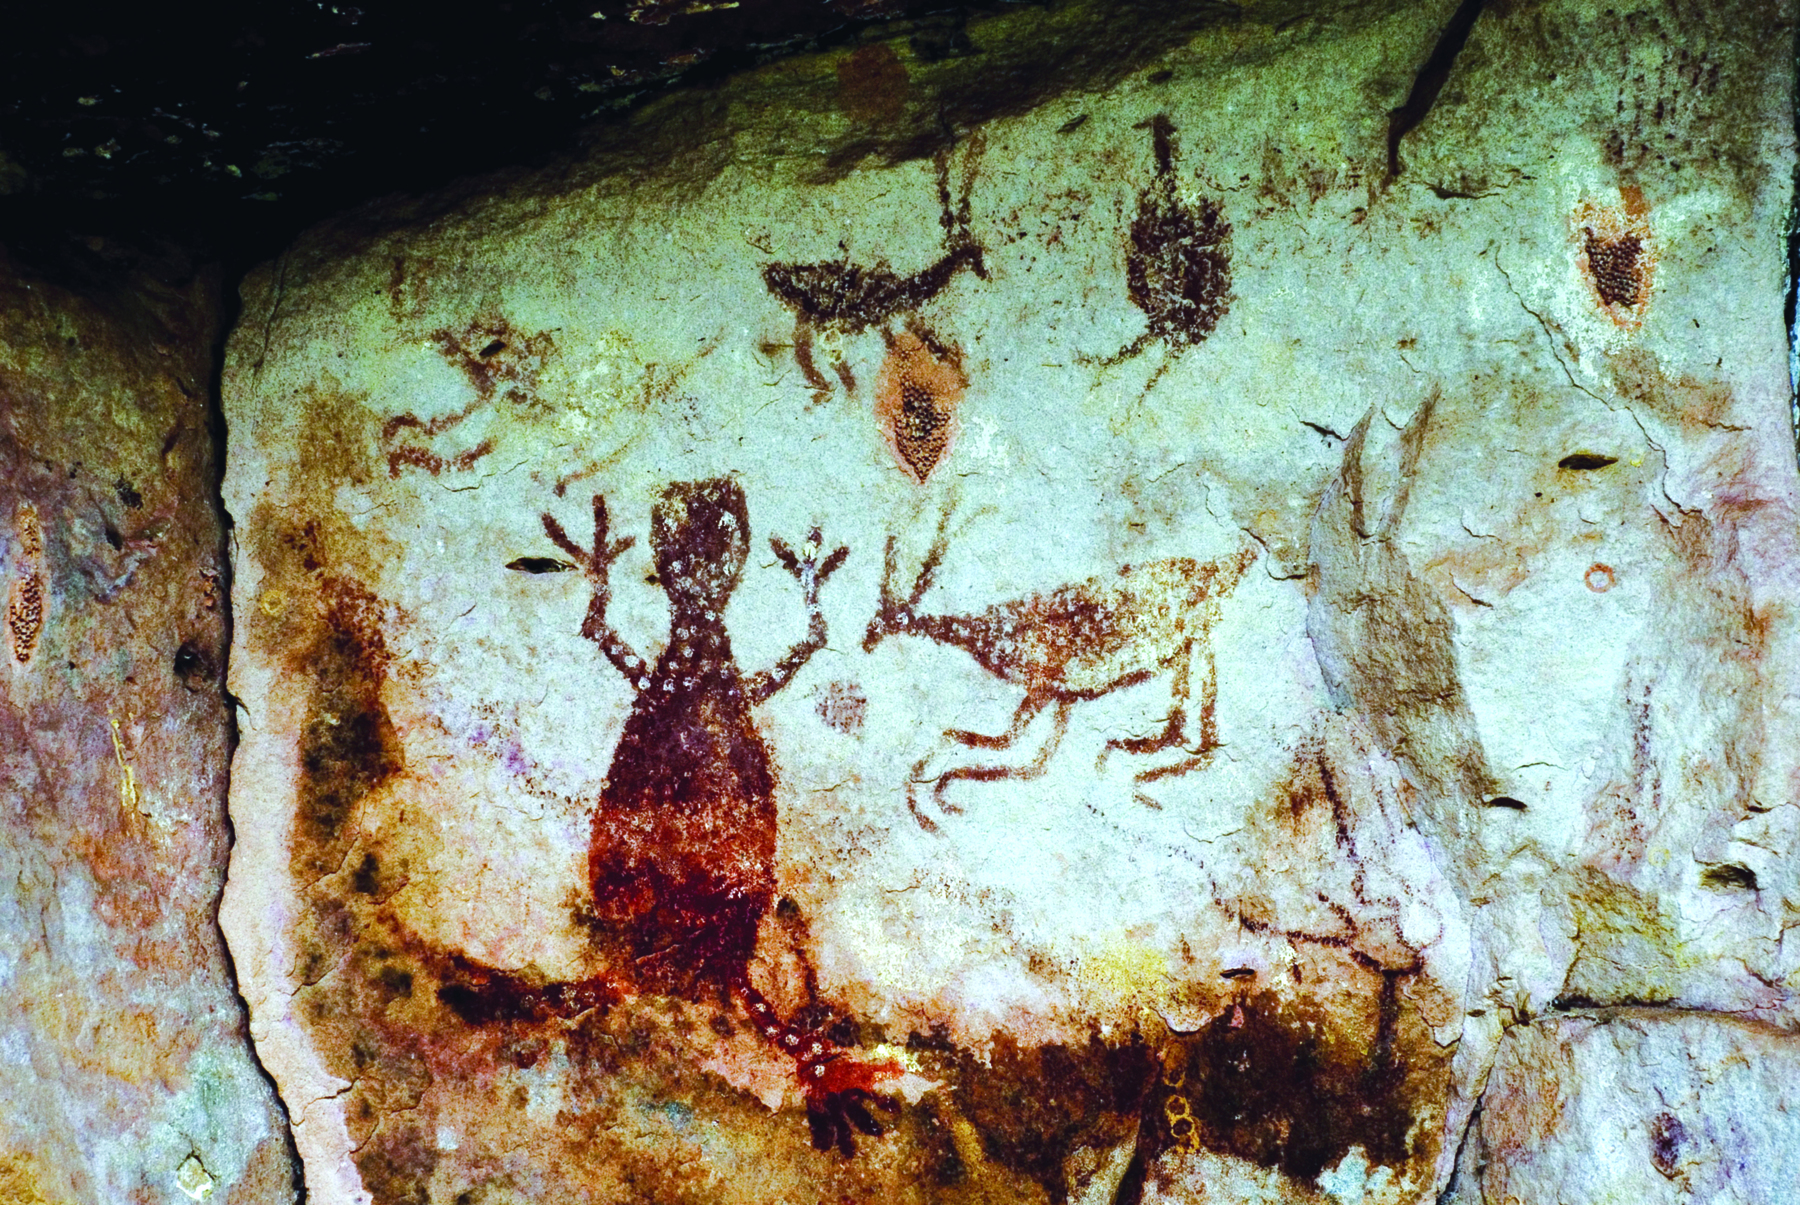 Fotografia. Parede rochosa com pinturas rupestres representando animais diversos.